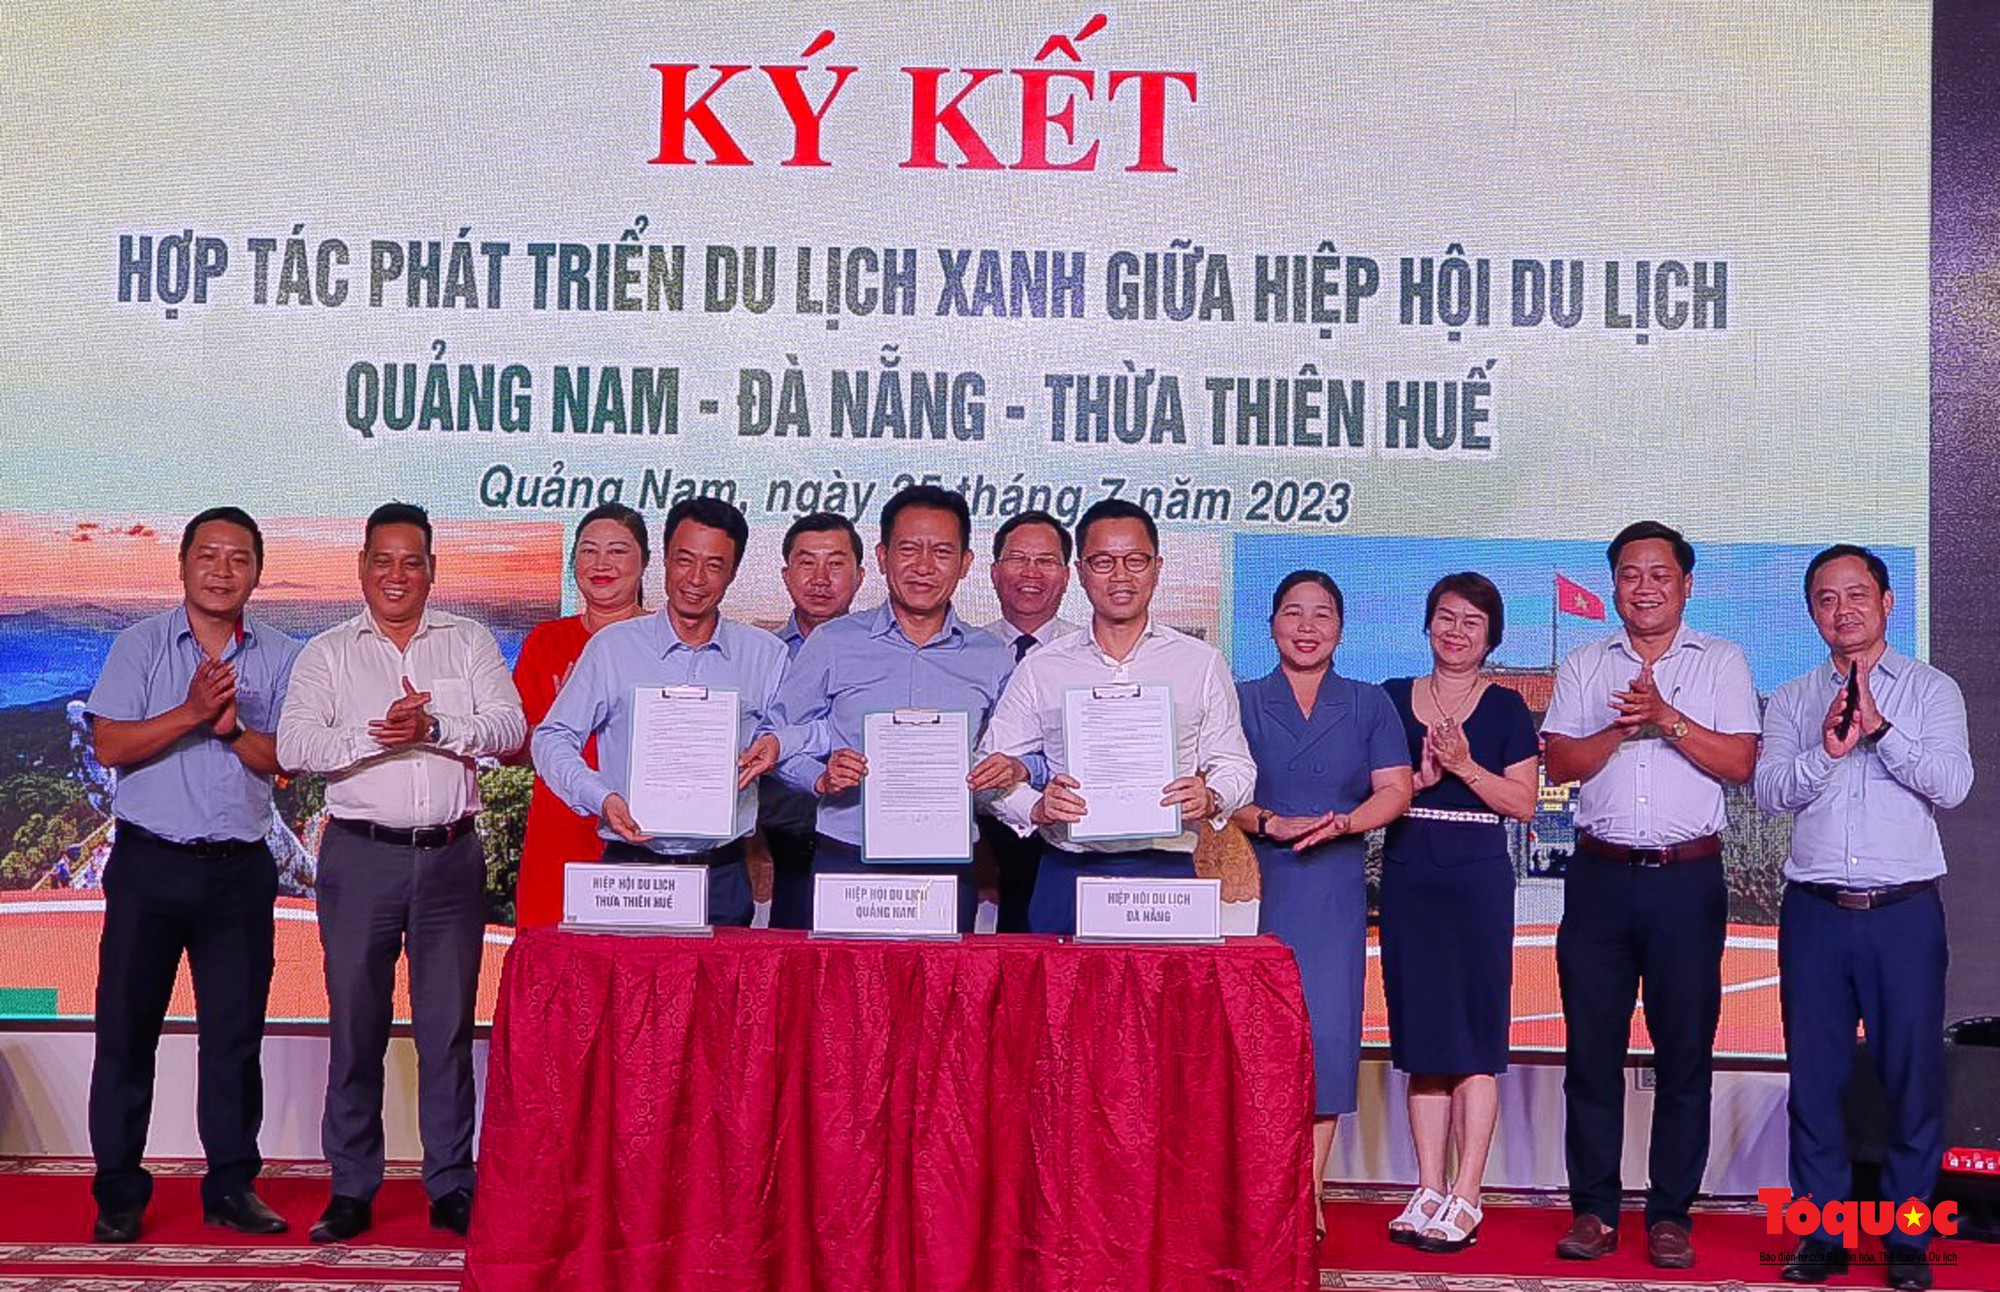 Quảng Nam, Đà Nẵng và Thừa Thiên Huế thúc đẩy phát triển du lịch xanh - Ảnh 1.